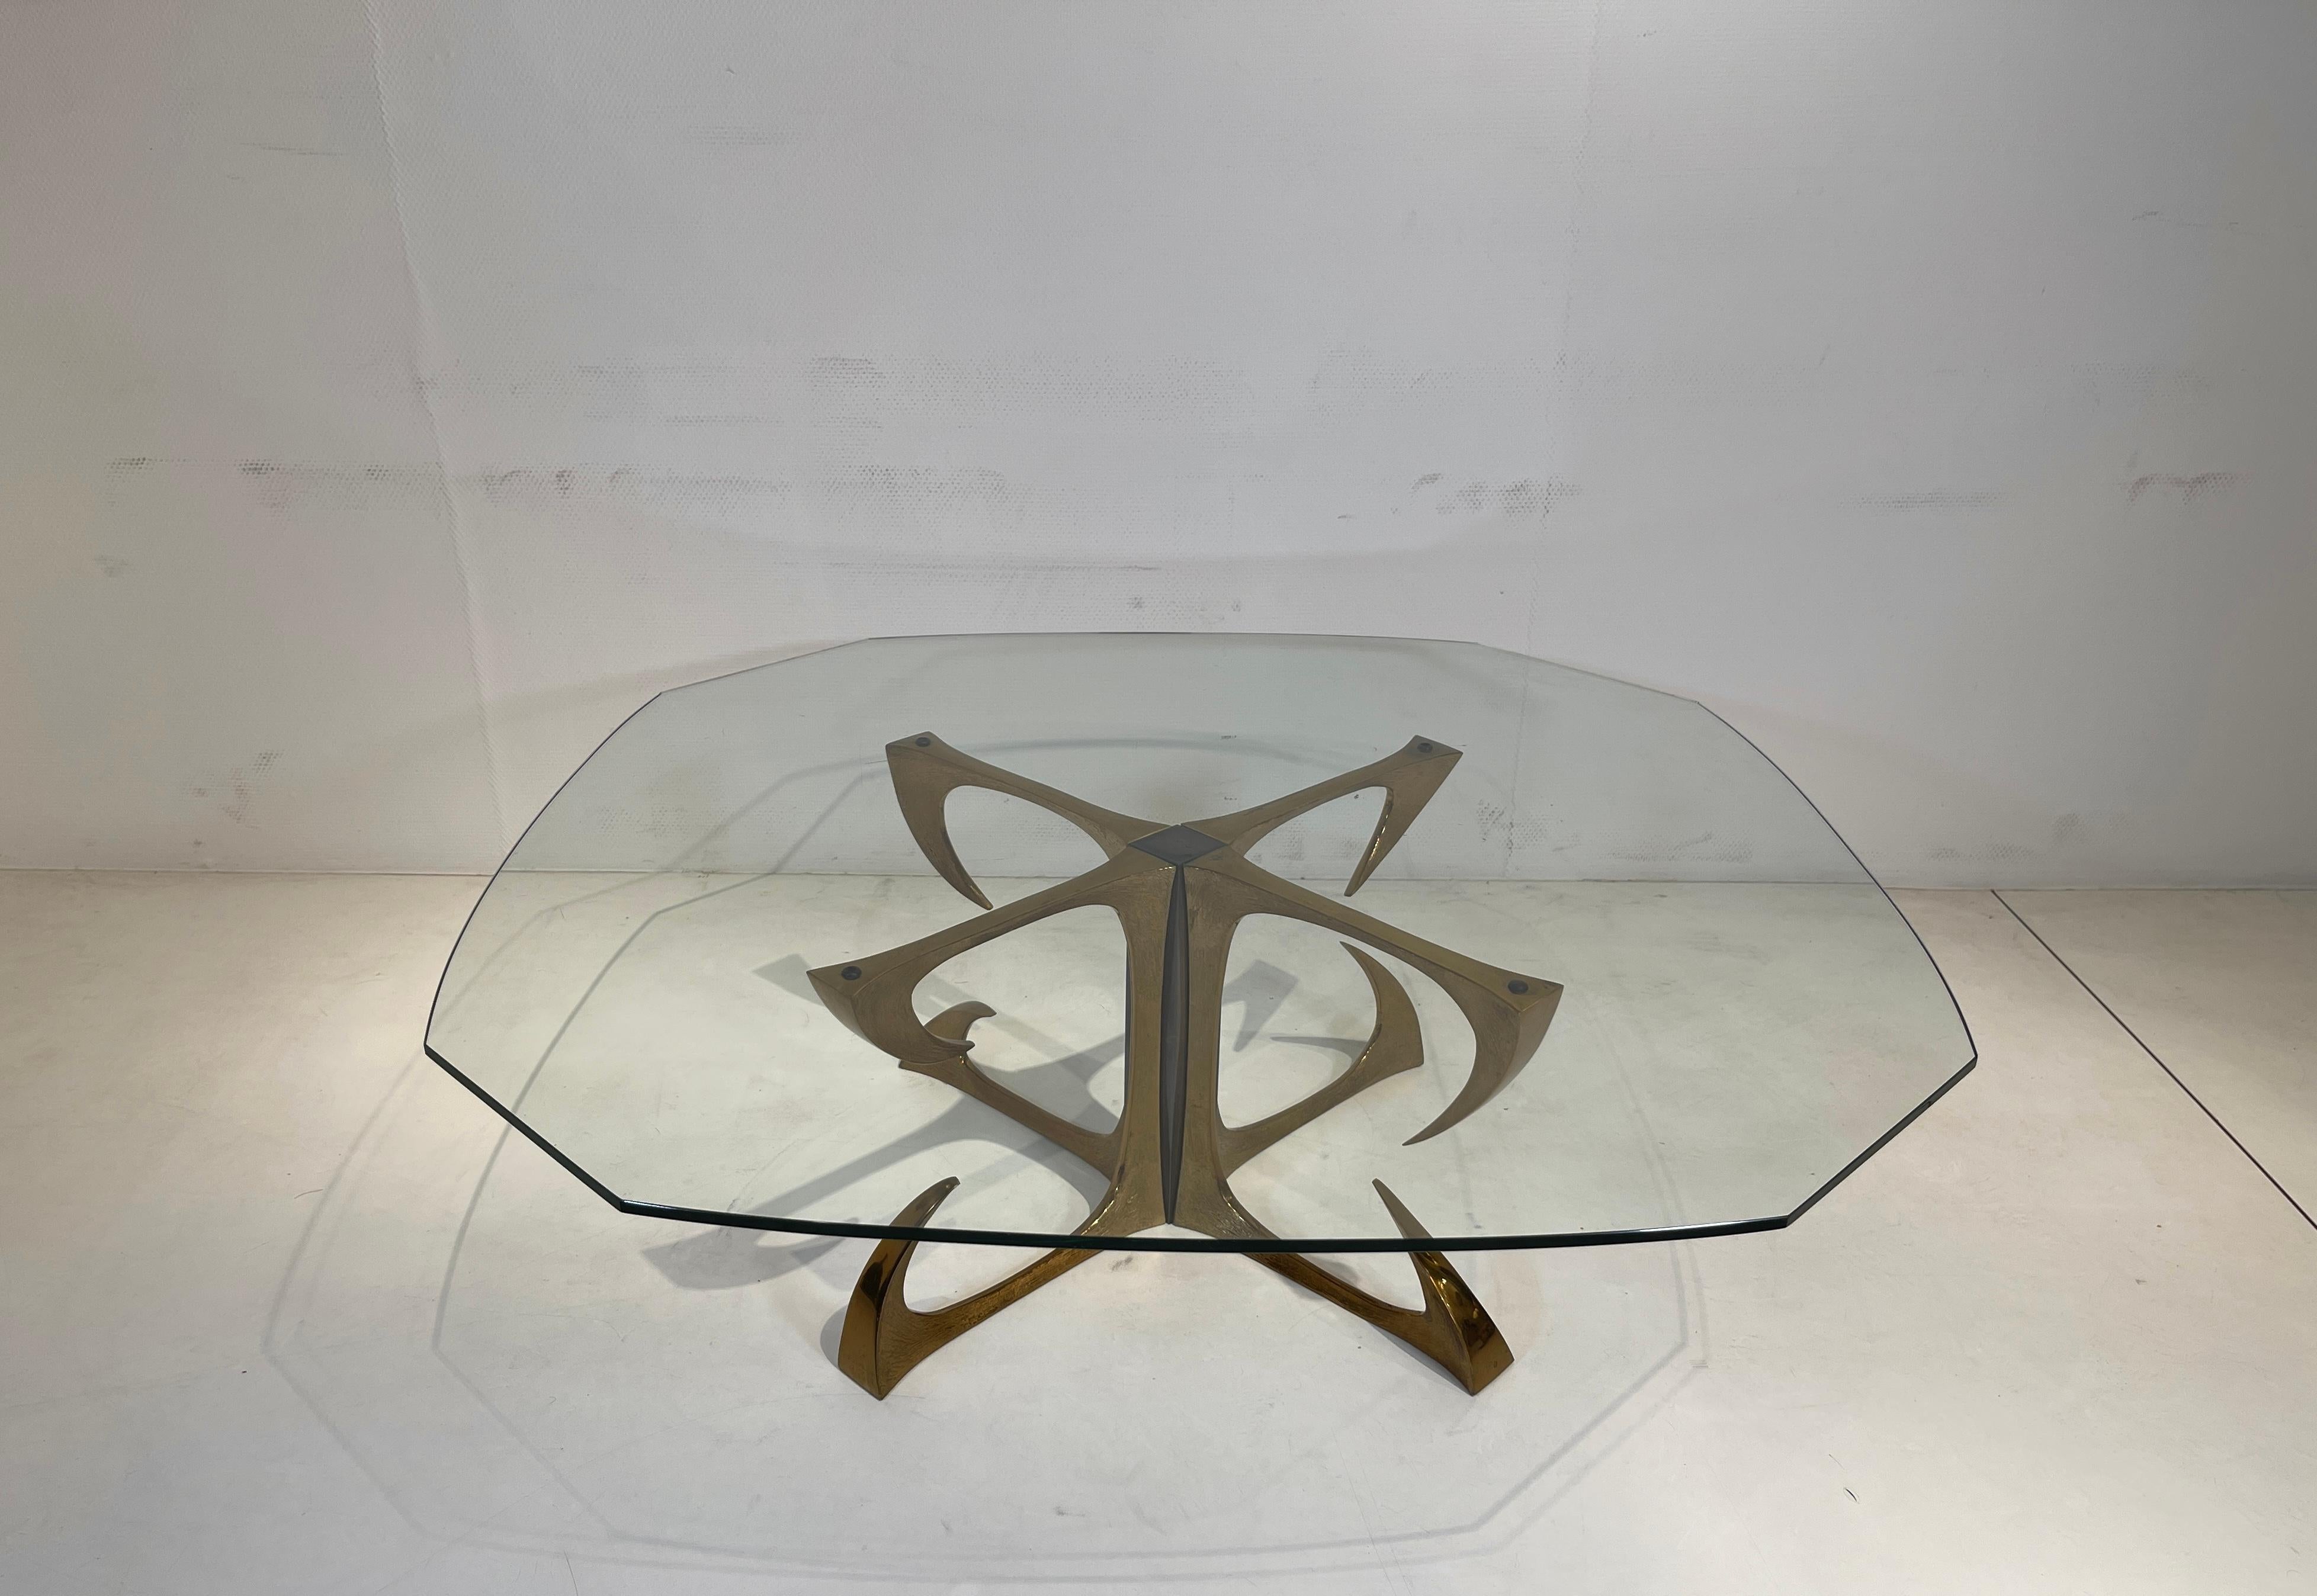 Rare et unique table basse en bronze sculptural, laiton et acier par Willy Daros des années 70. En très bon état d'origine, avec un plateau en verre.
Dimension : 71x36hcm.
Dimension avec le verre supérieur : 110x121x37hcm.